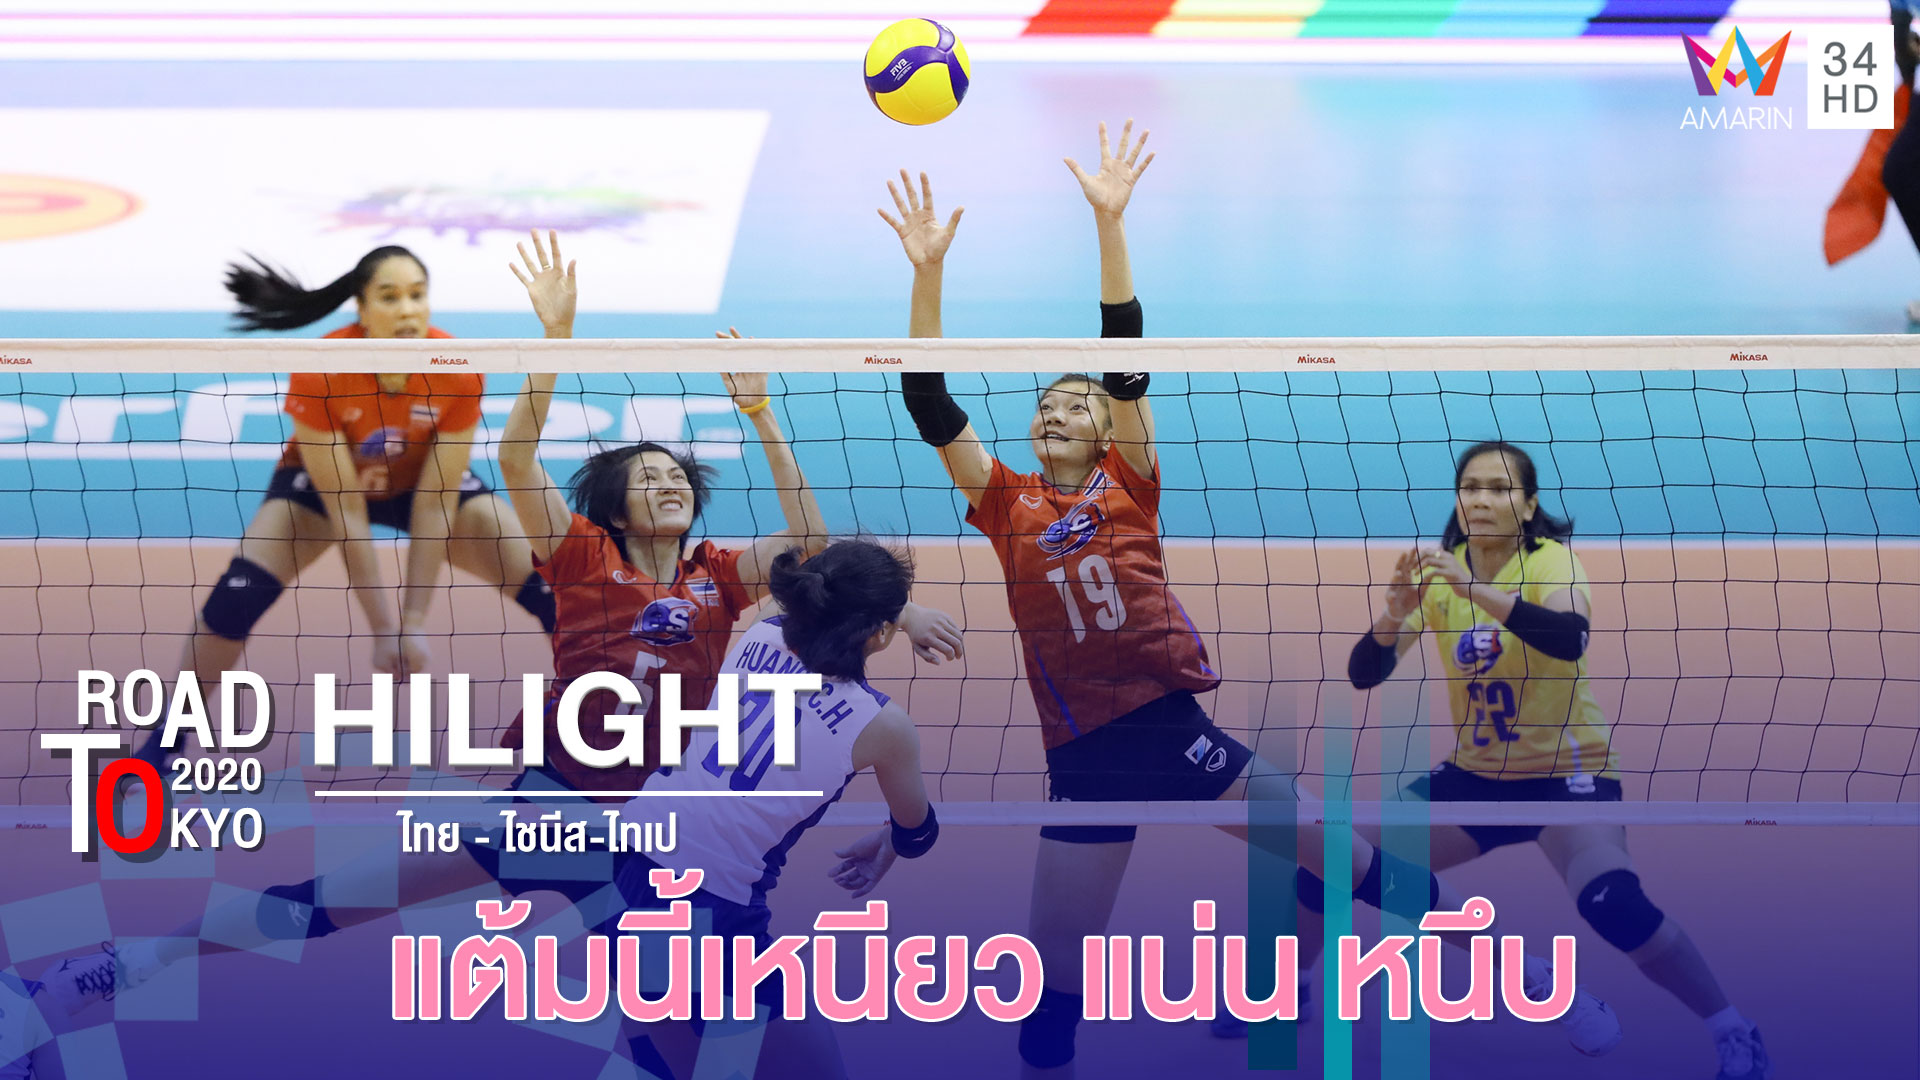 สุดยื้อ! ทีมไทย - ไชนีส-ไทเป โต้สุดมันส์ | วอลเลย์บอลหญิง รอบคัดเลือก โตเกียว 2020 | 7 ม.ค.63